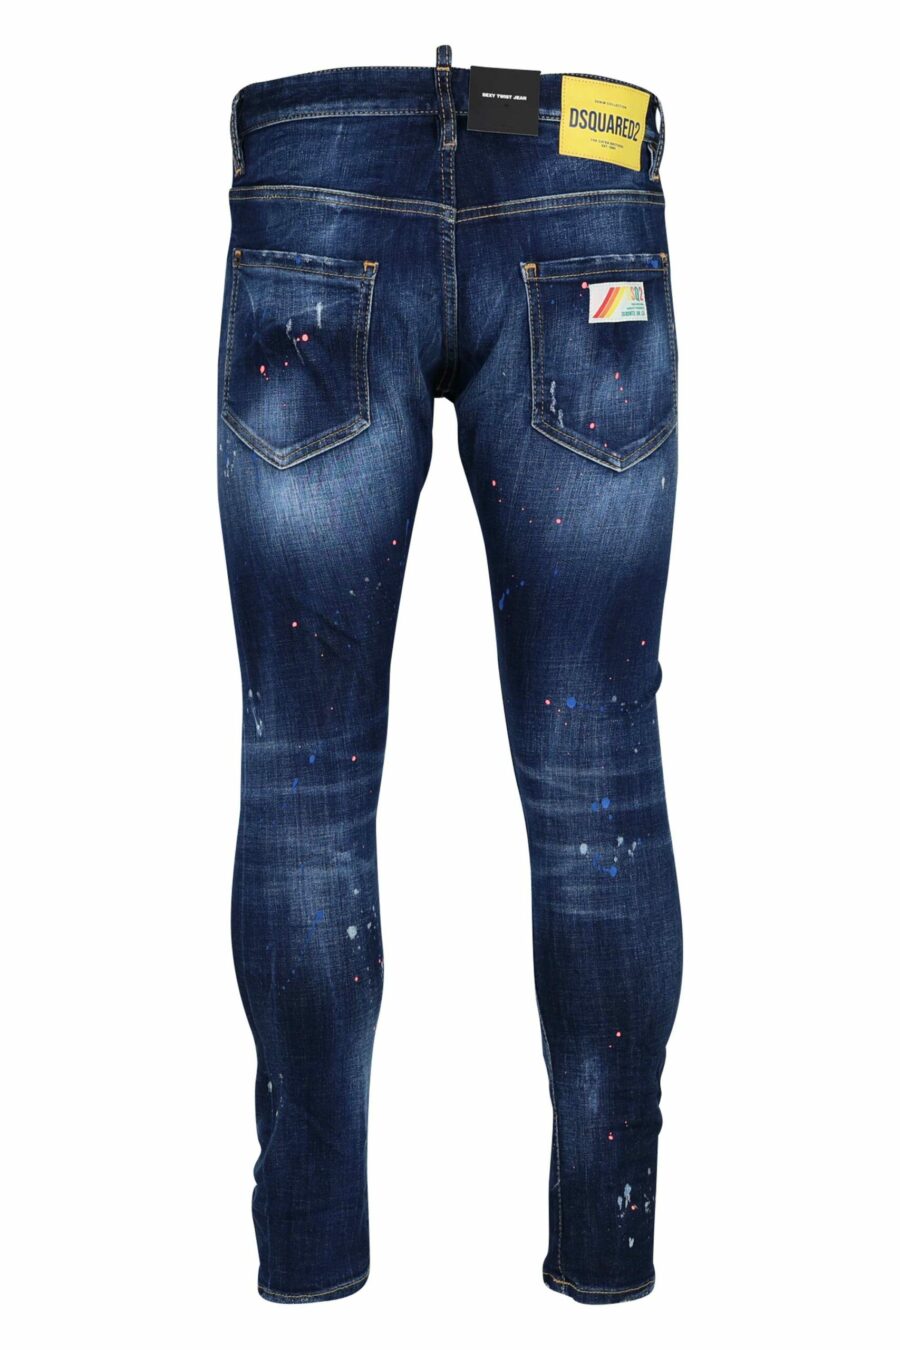 Jean bleu "sexy twist jean" porté avec de la peinture orange - 8054148308292 2 à l'échelle